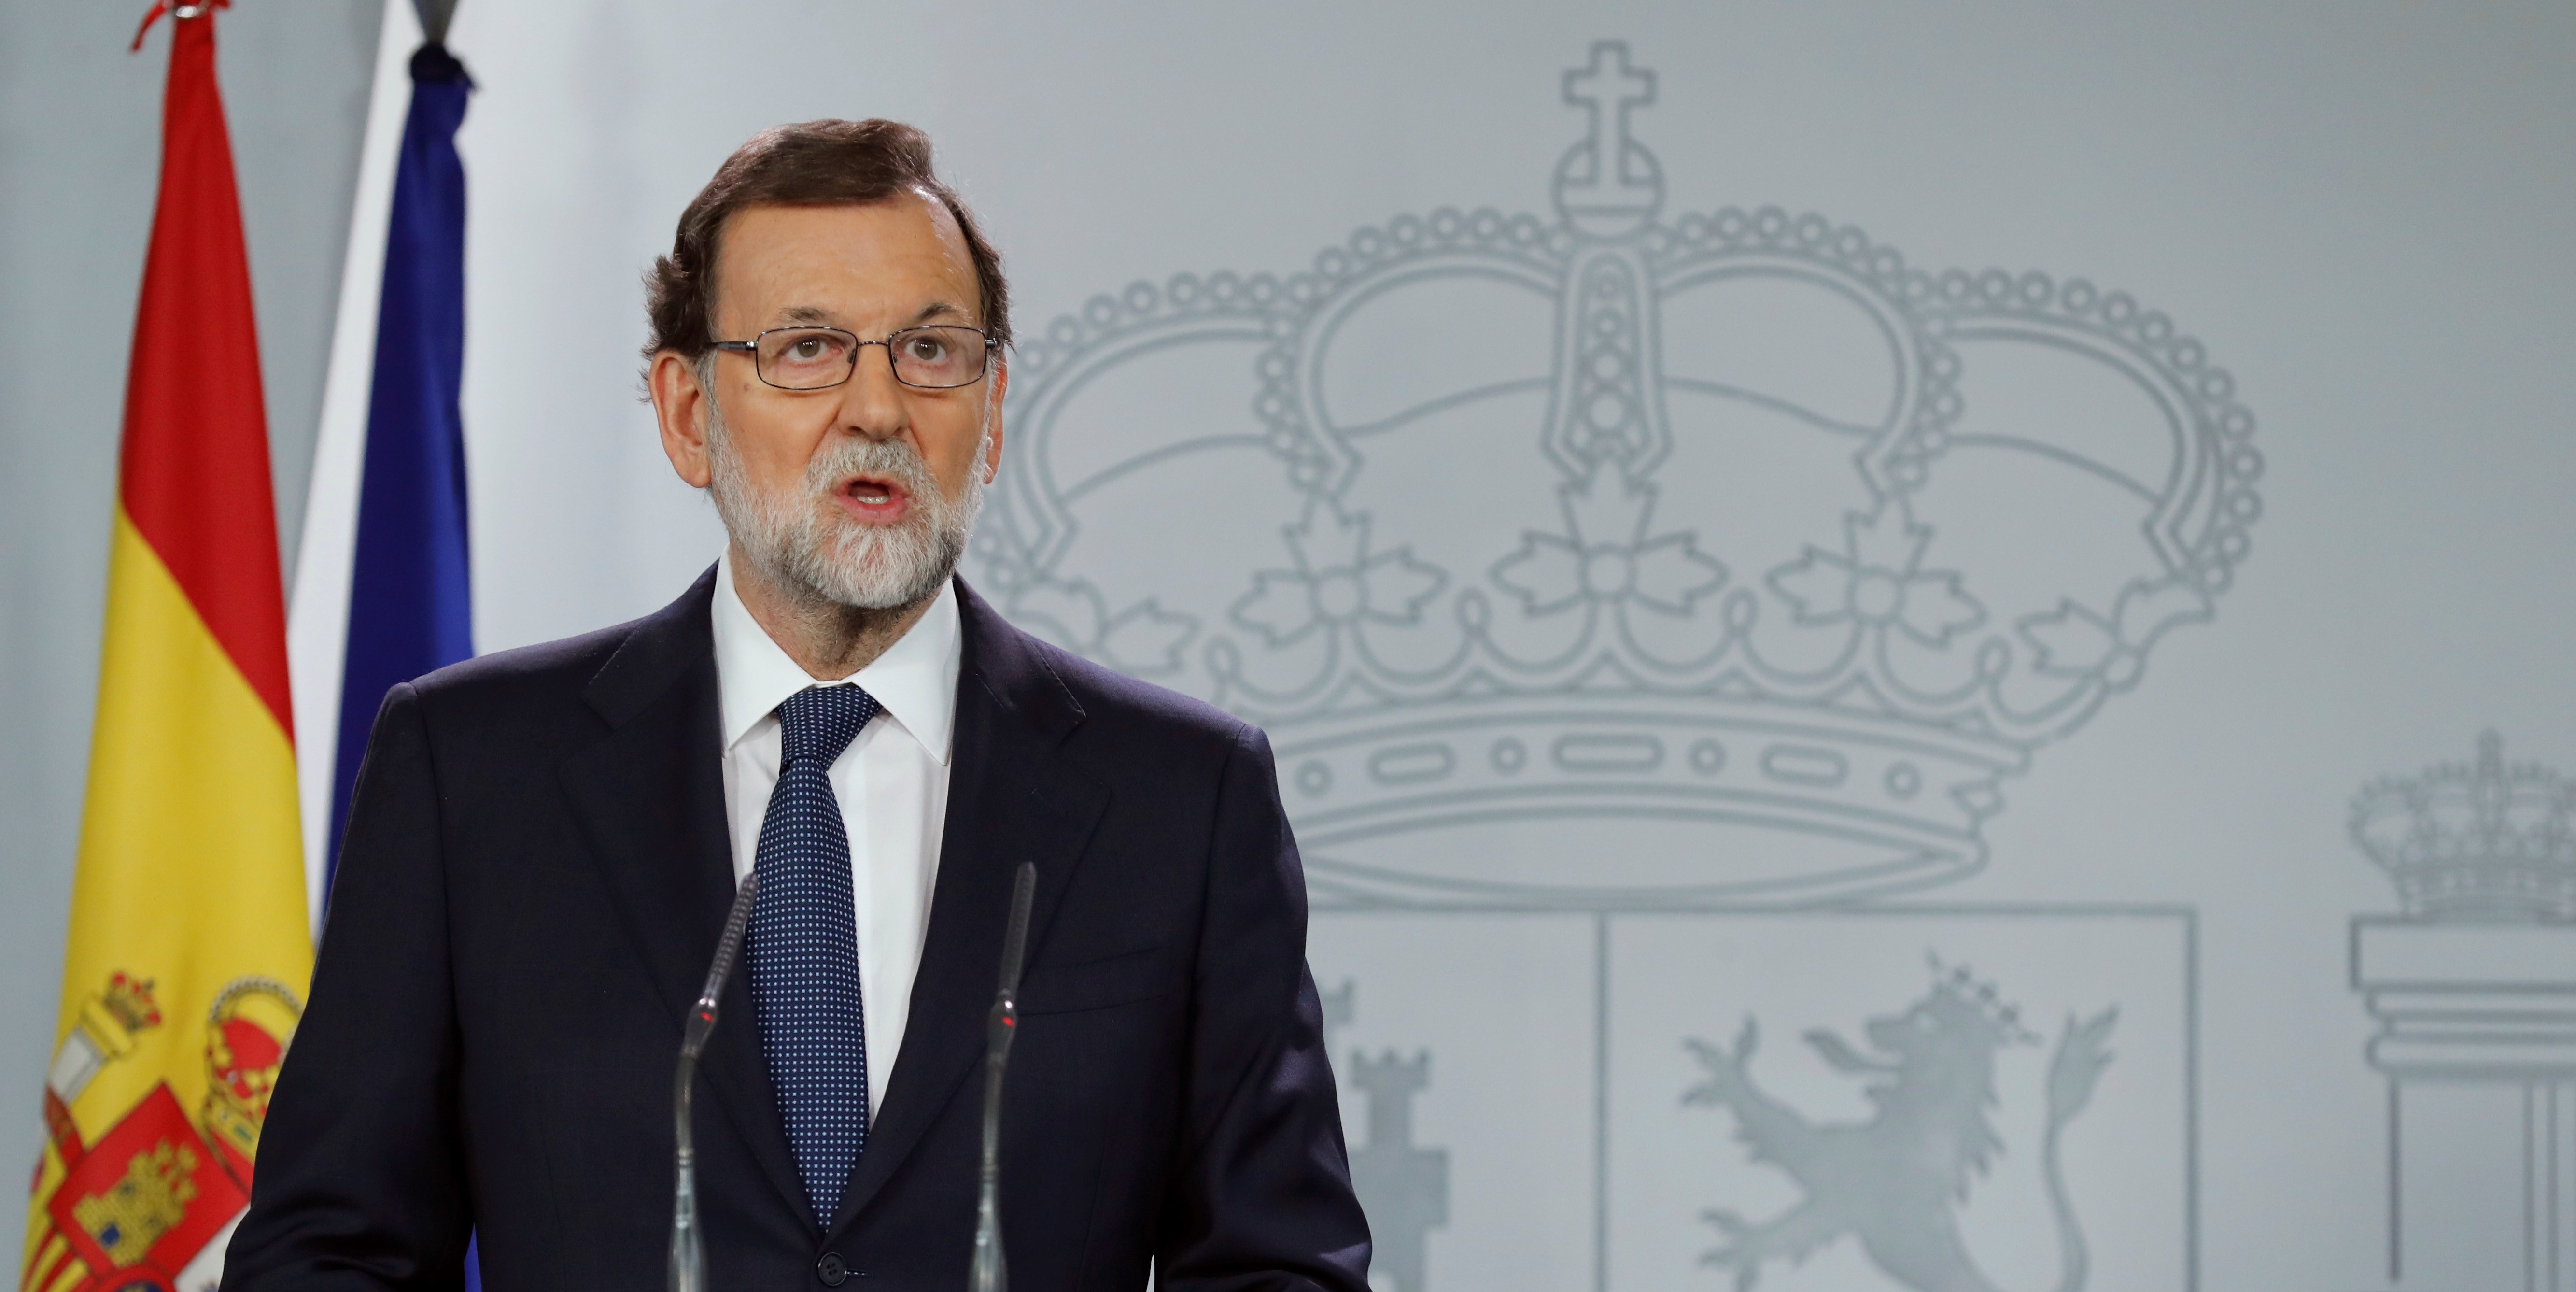 El presidente del Gobierno, Mariano Rajoy, durante su comparecencia ante los medios tras la reunión extraordinaria del Consejo de Ministros